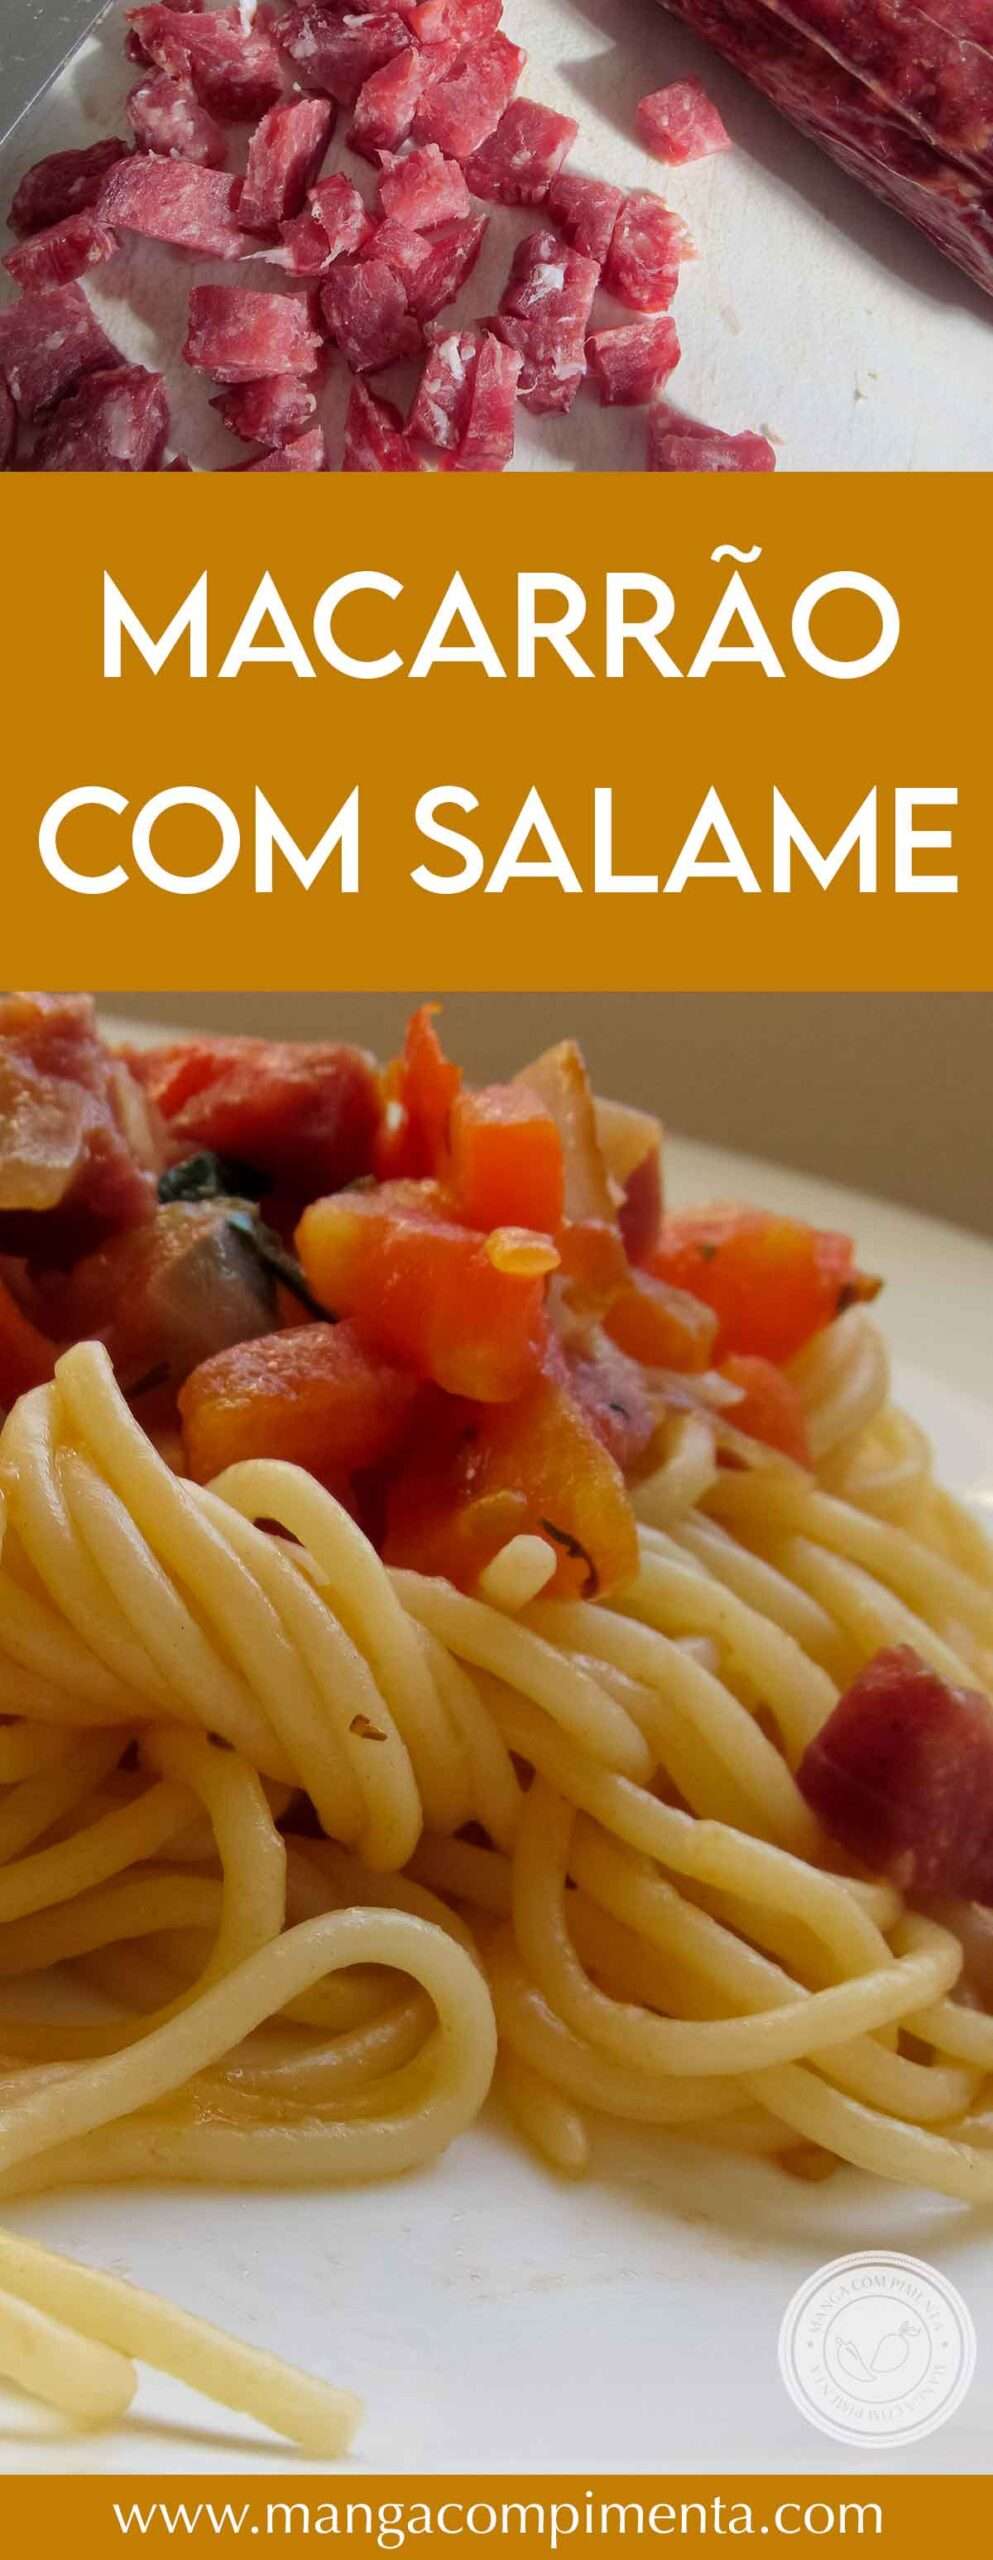 Receita de Macarrão com Salame - almoço Express delicioso na Semana!